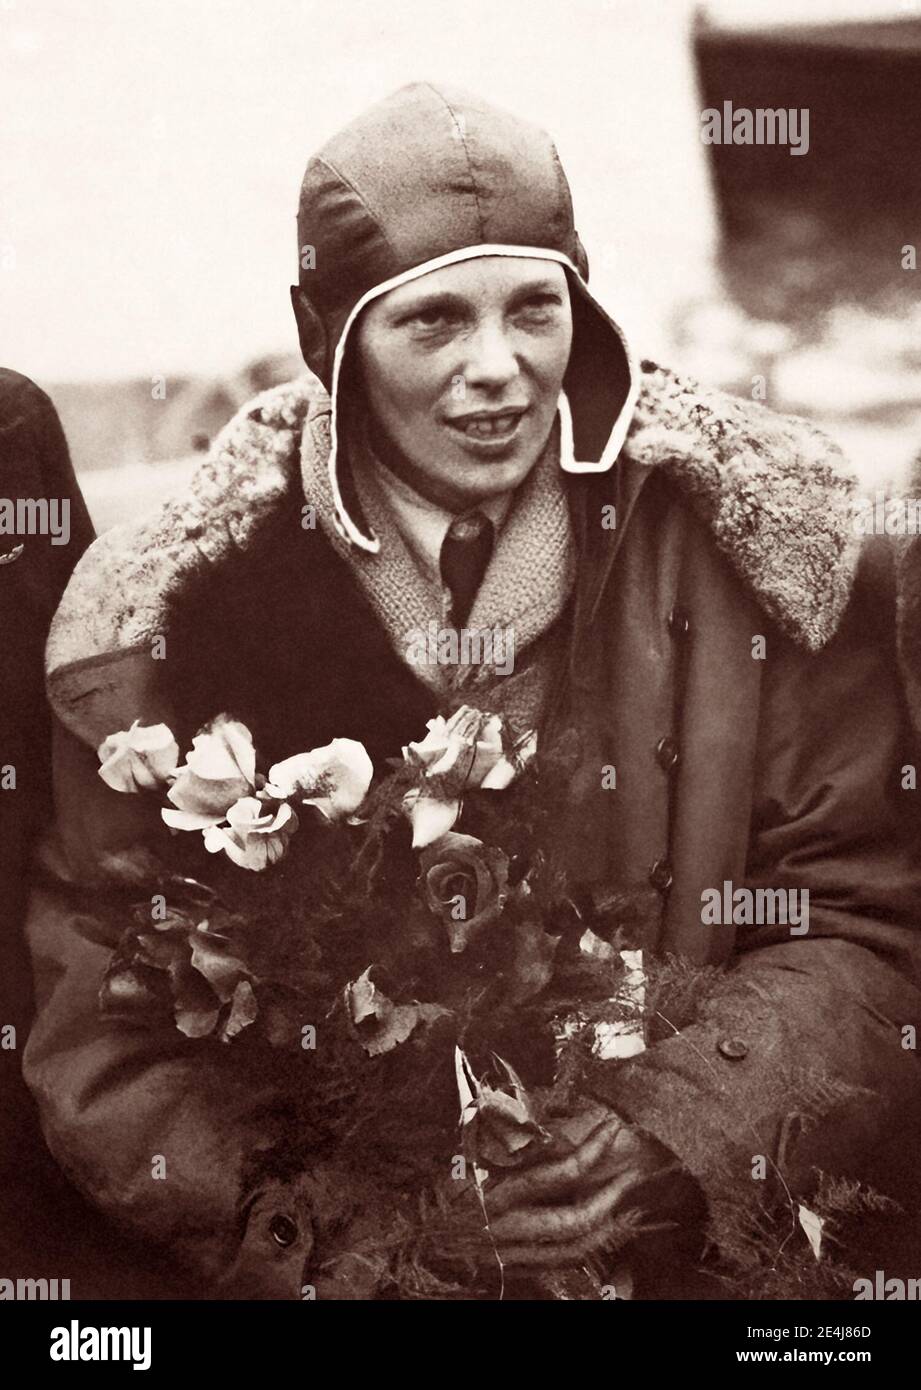 Amelia Earhart (1897-1937) in Southampton, England, nach dem erfolgreichen Abschluss ihres Transatlantikfluges 1928, ein Jahr nach Charles Lindberghs Solo-Transatlantikflug. Da der größte Teil des Fluges auf Instrumenten war und Earhart keine Ausbildung für diese Art des Fliegens hatte, hat sie das Flugzeug nicht pilotieren lassen. 1932, fünf Jahre nach Lindberghs historischem Flug, machte Earhart ihren eigenen Nonstop-Solo-transatlantischen Flug. Stockfoto